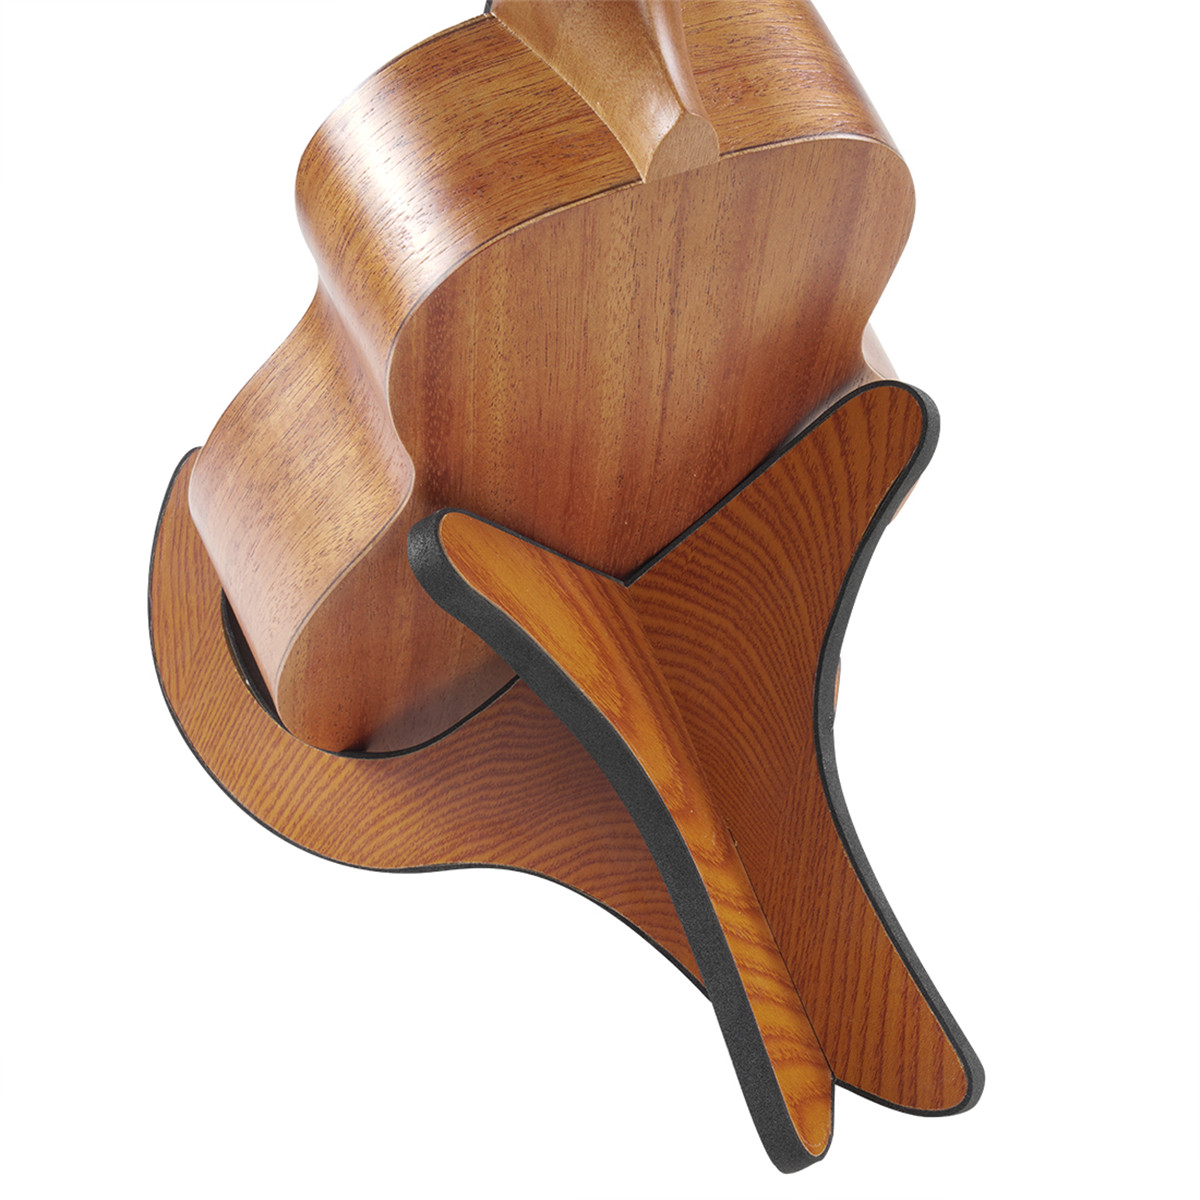 Portable Ukulele Wooden Foldable Holder